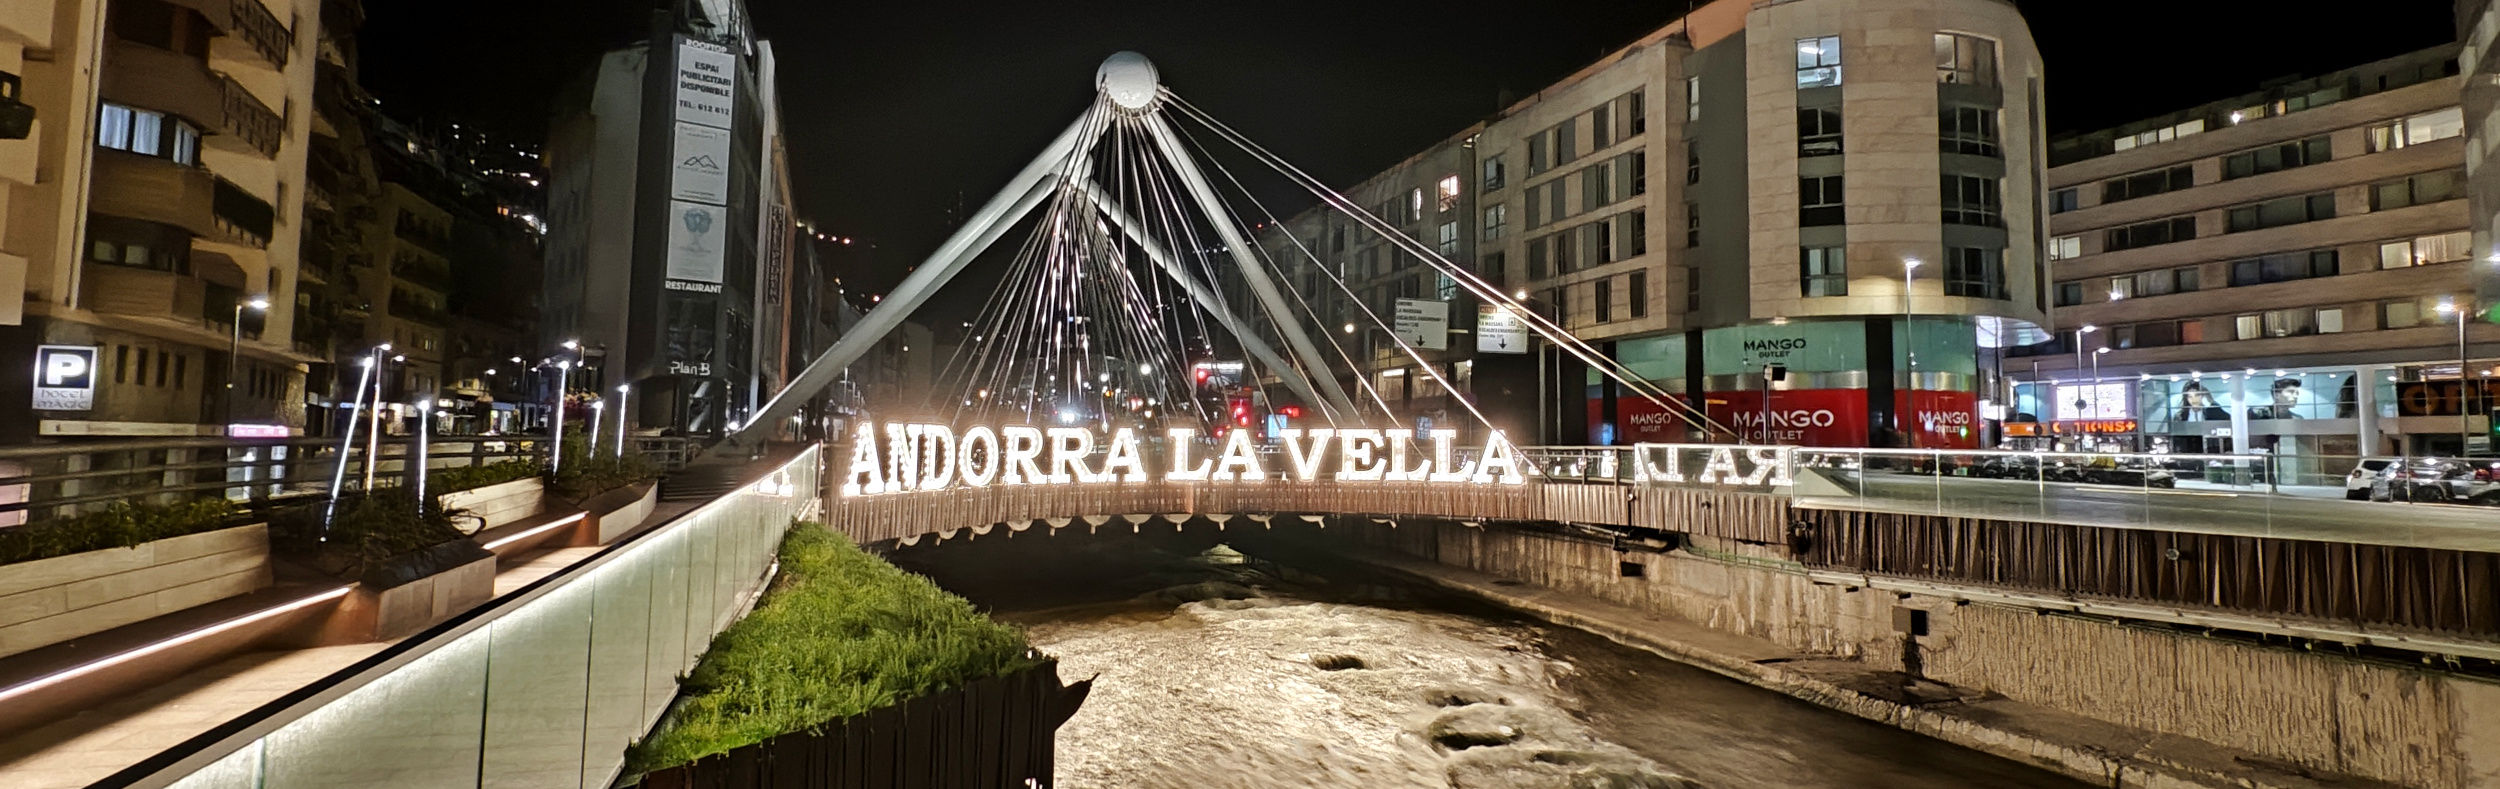 ANDORRA LA VELLA - Hoteles en Andorra